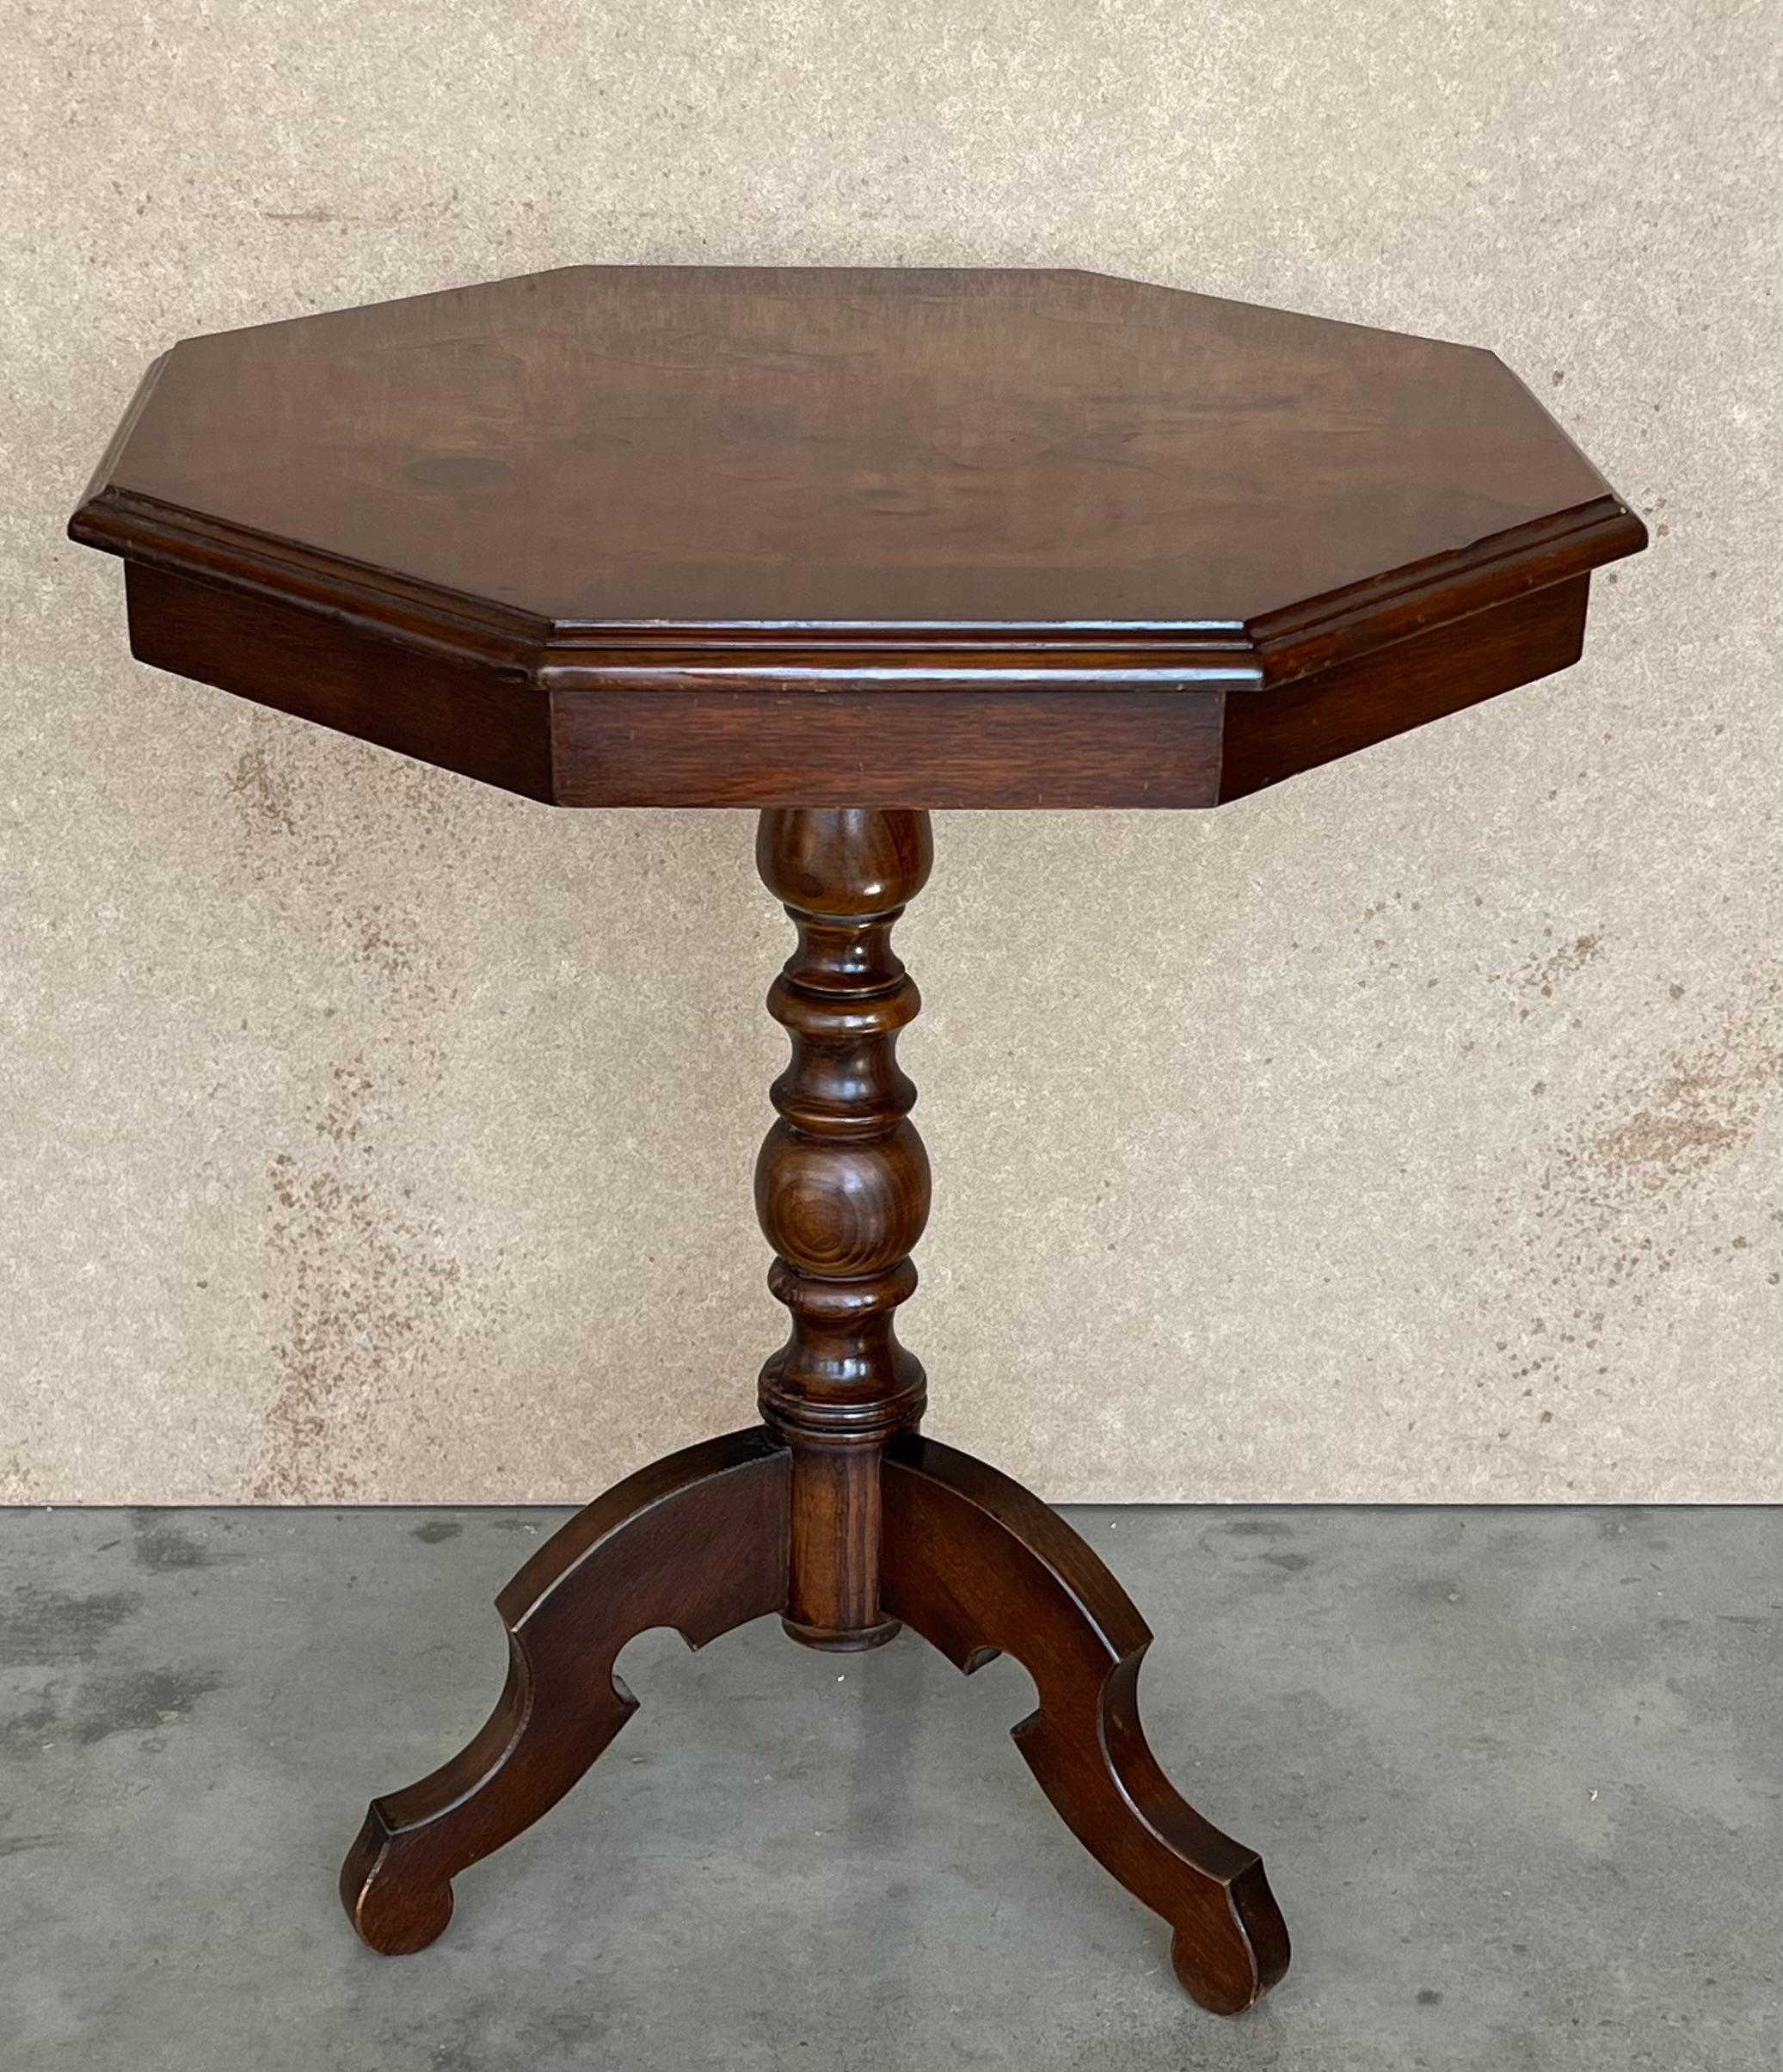 La table à thé anglaise est un meuble original réalisé à la fin du XIXe siècle par une manufacture anglaise. Cette table à thé de forme octogonale présente un plateau plaqué en diverses racines de bois, soutenu par un piédestal sculpté à trois pieds.